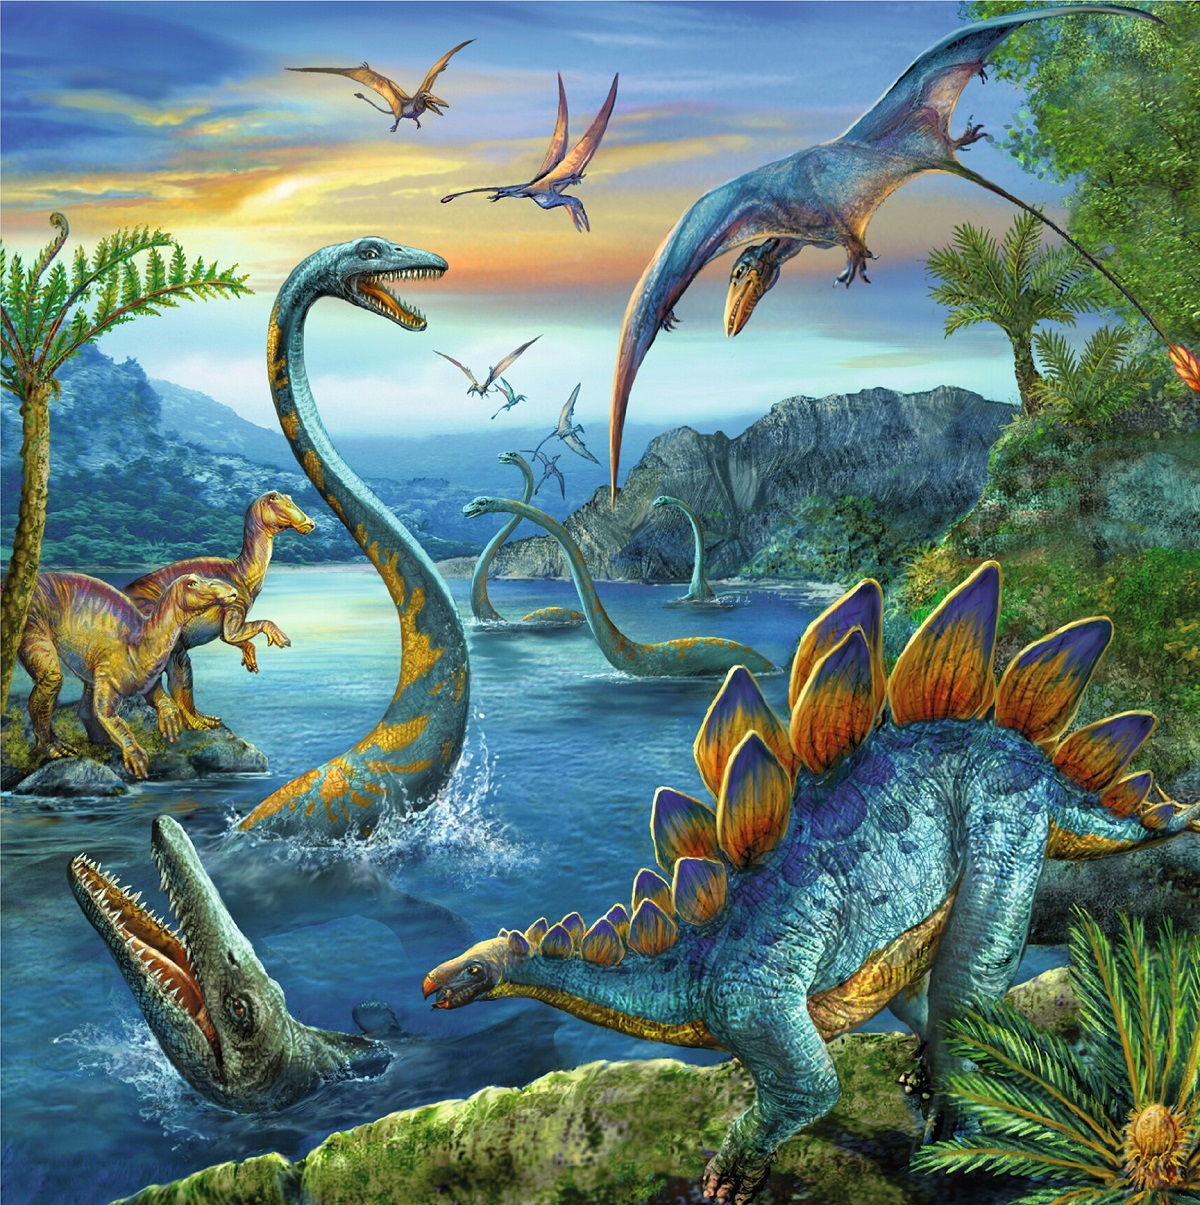 Puzzle 3 in 1. Farmecul dinozaurilor